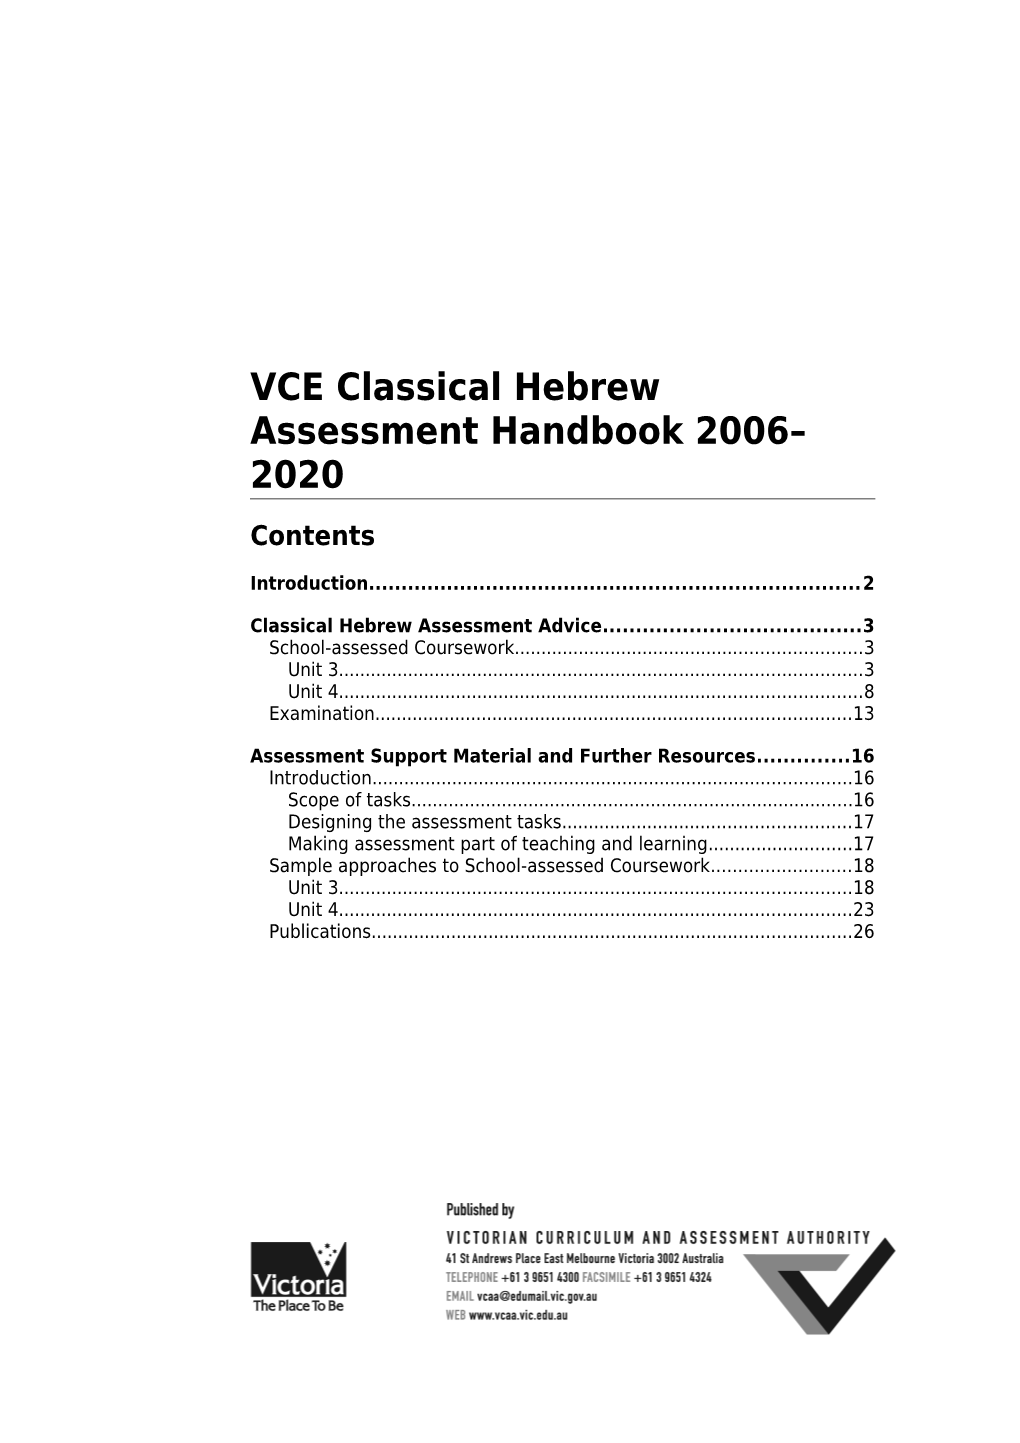 VCE Classical Hebrew Assessment Handbook 2006-2010